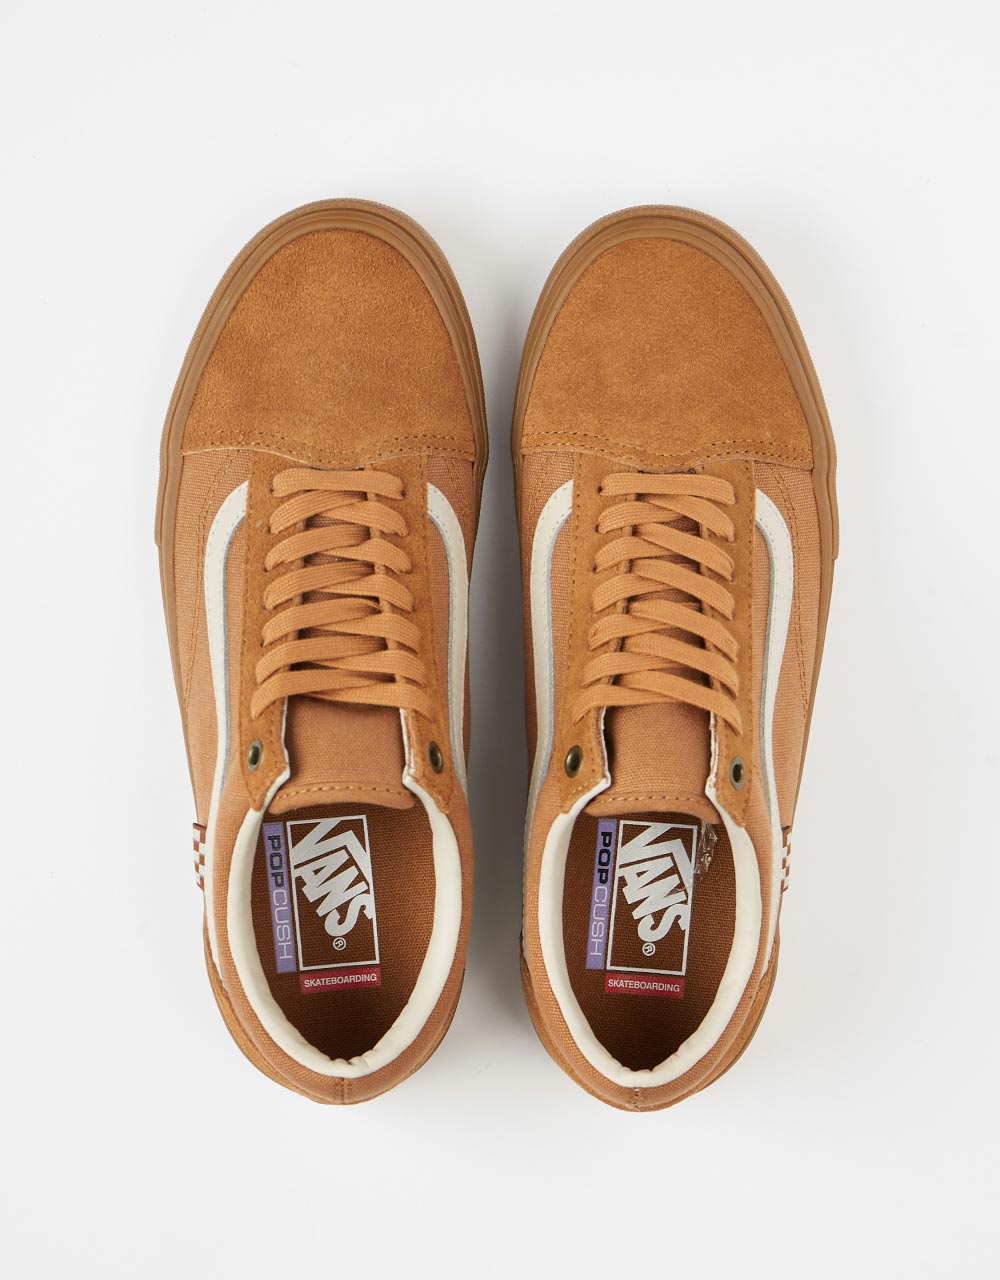 Vans Skate Old Skool Shoes - Light Brown/Gum